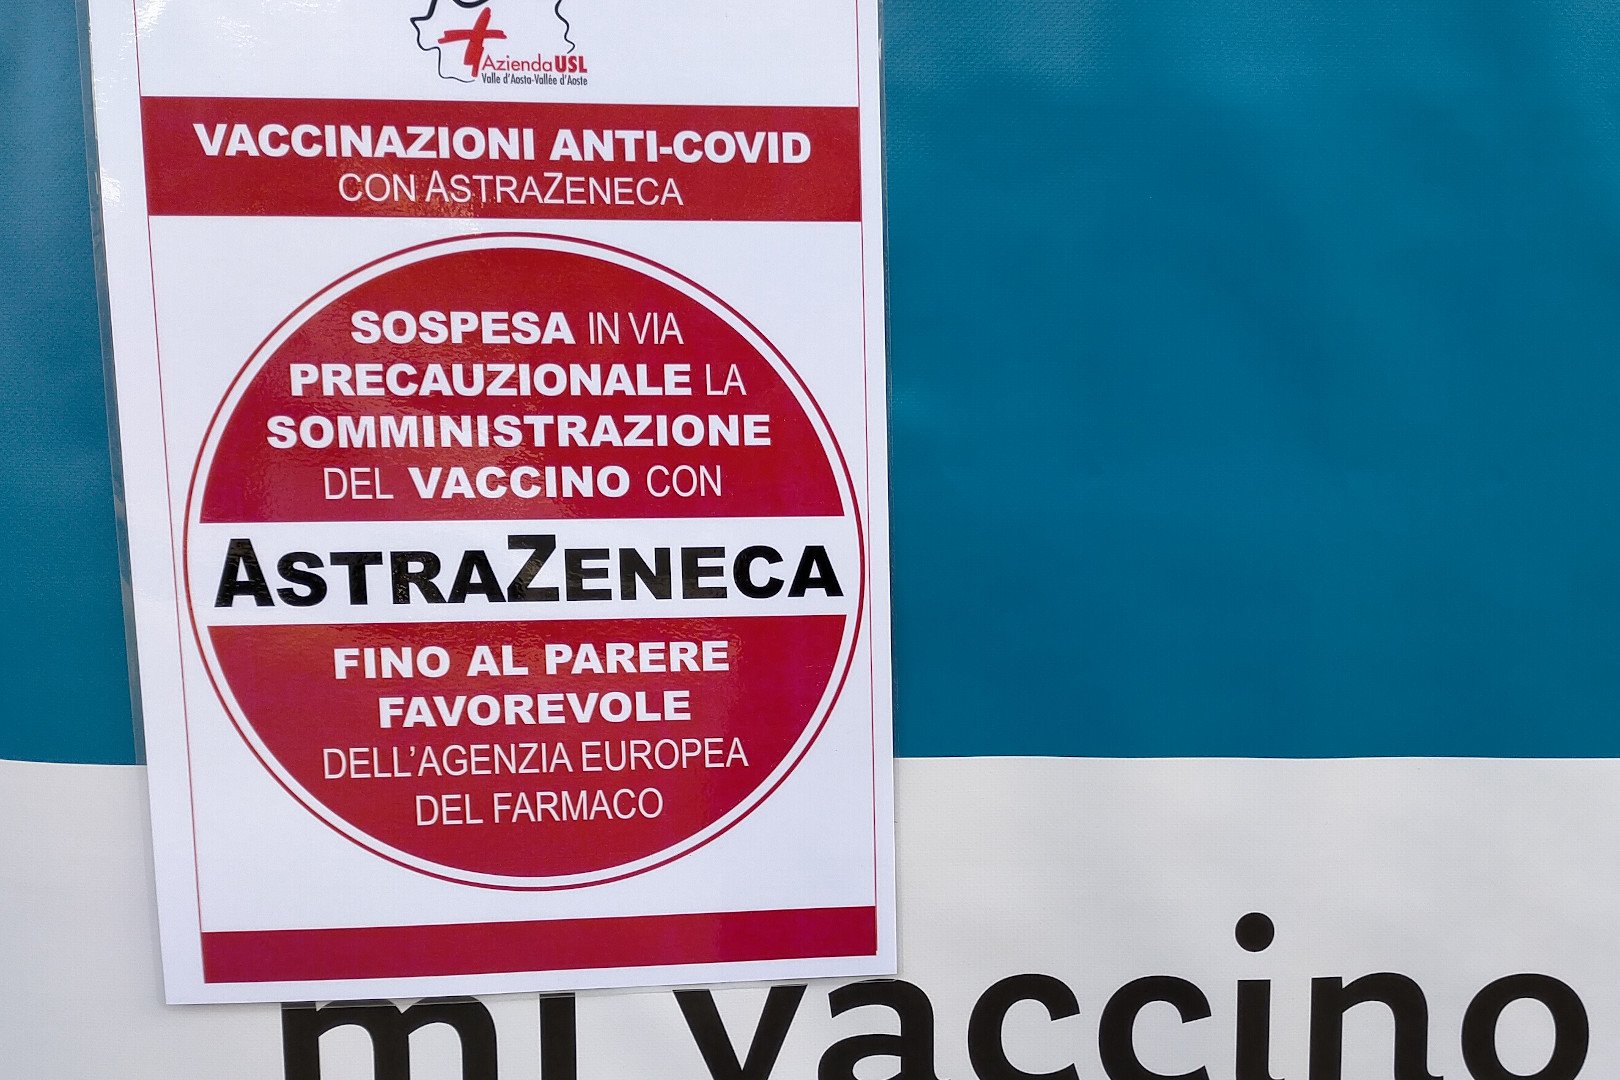 Riprende anche in Valle d’Aosta l’utilizzo di “AstraZeneca”: previste oltre 700 vaccinazioni in due giorni ed il recupero delle 110 sospese